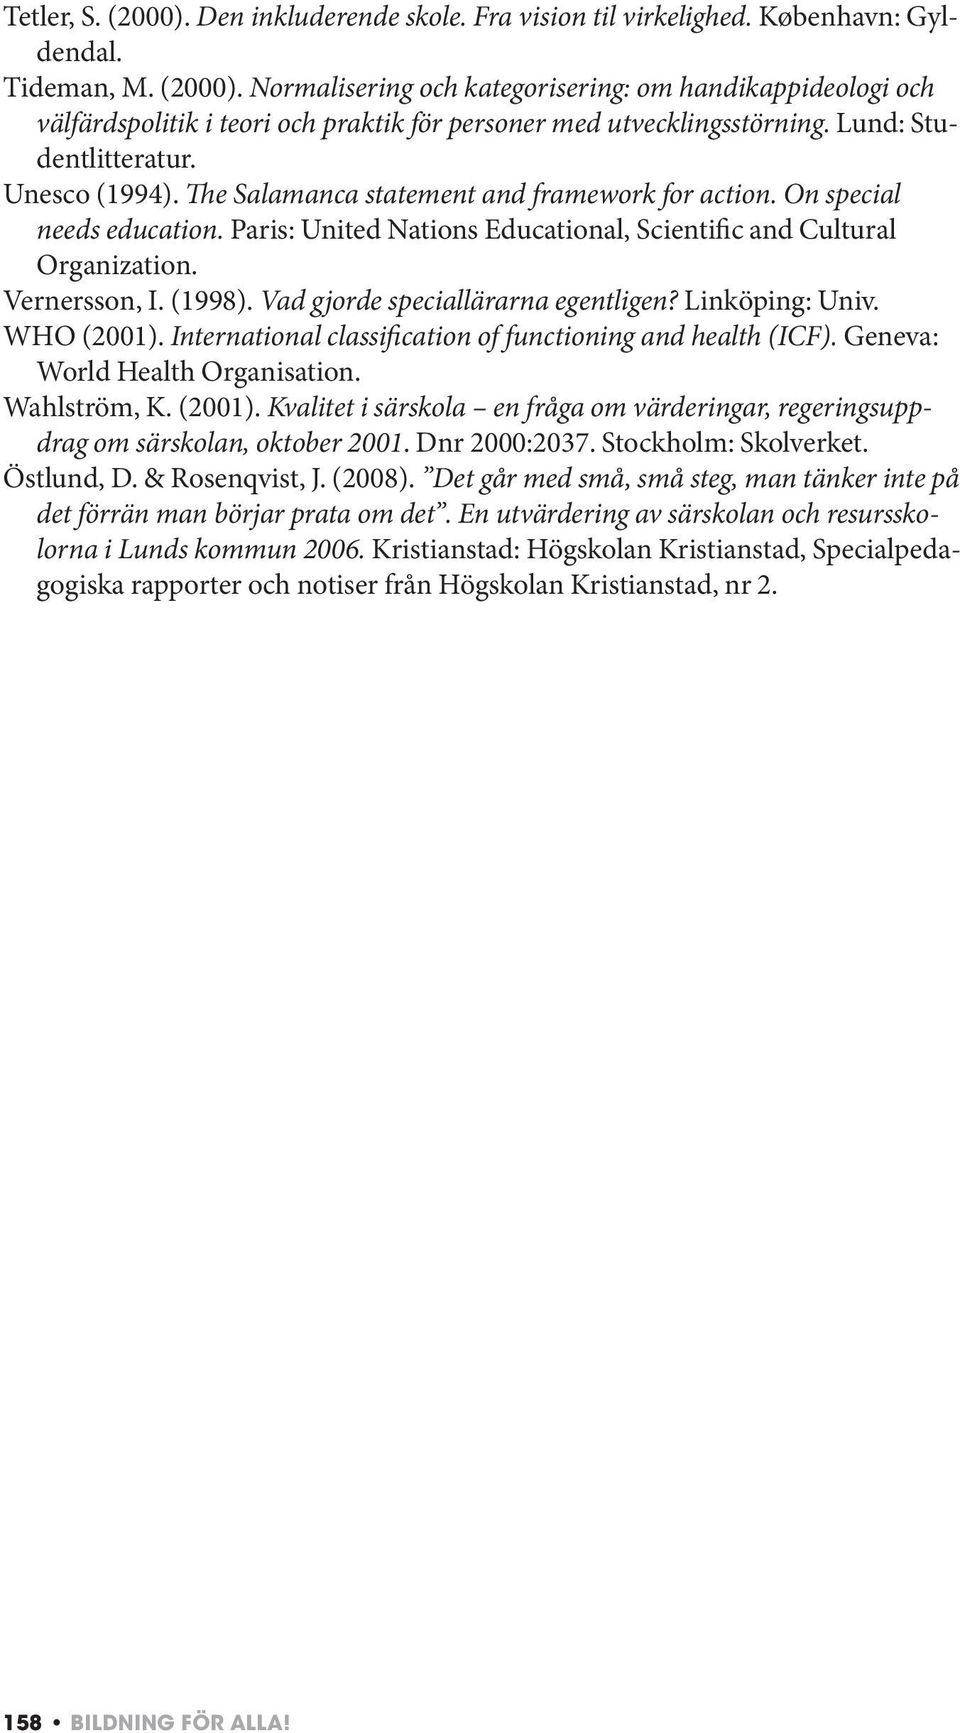 Vernersson, I. (1998). Vad gjorde speciallärarna egentligen? Linköping: Univ. WHO (2001). International classification of functioning and health (ICF). Geneva: World Health Organisation. Wahlström, K.